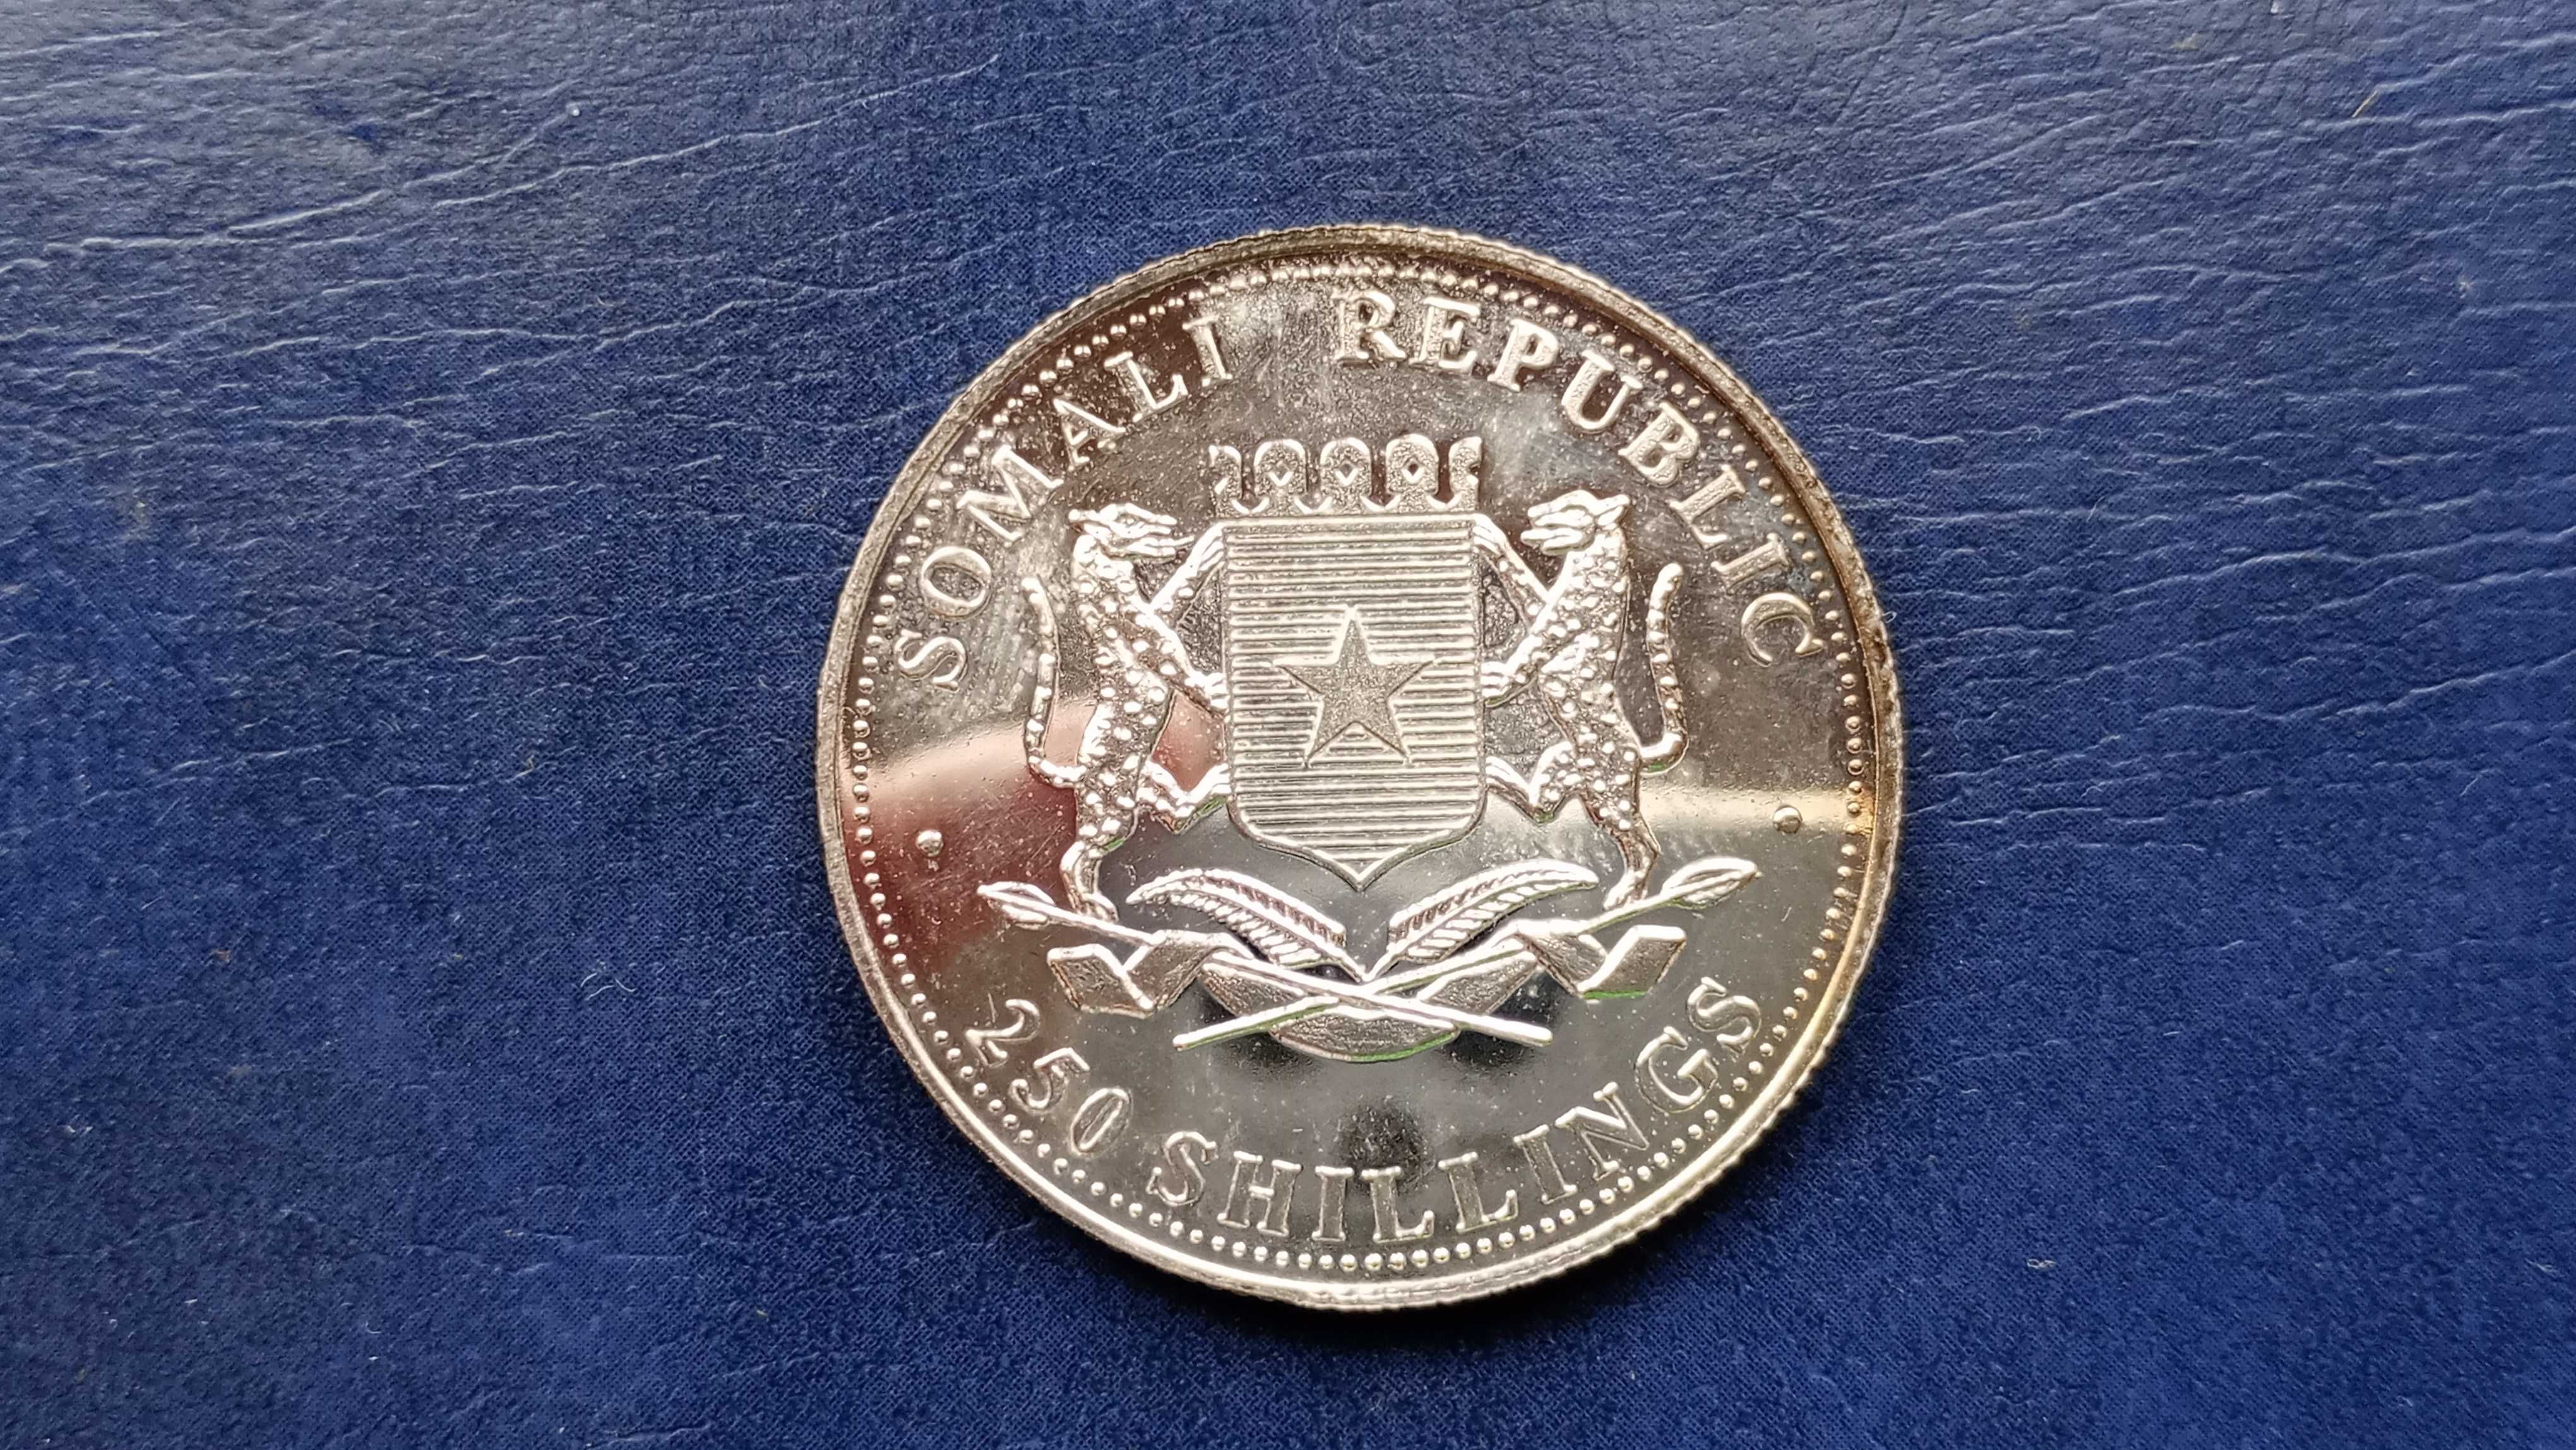 Stare monety 250 szyling 2005 Somalia /1 posrebrzana